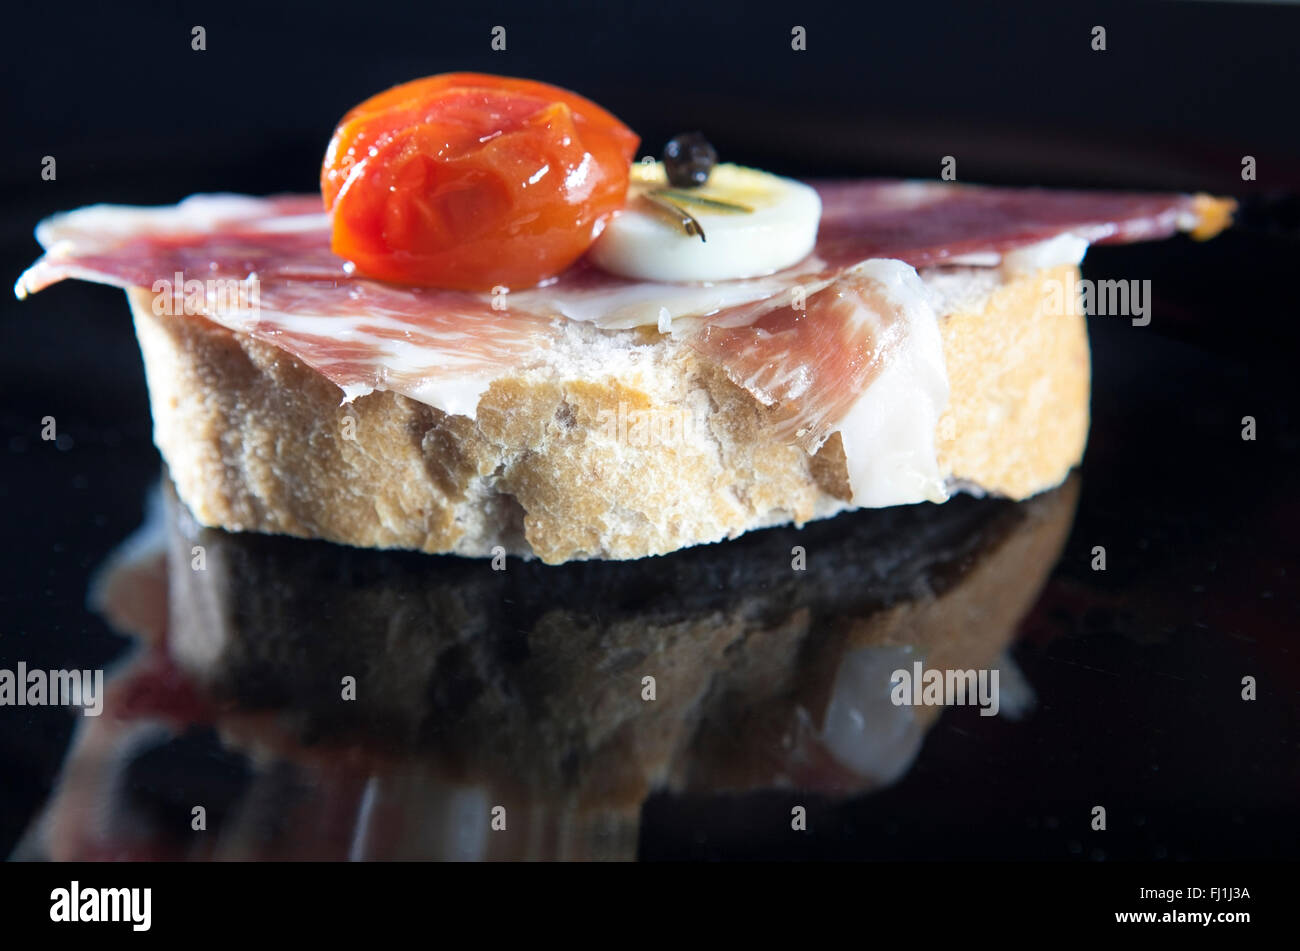 L'Espagnol tapa de jambon serrano servi sur des tranches de pain avec tomate et oeuf dur. Avec des réflexions isolées Banque D'Images